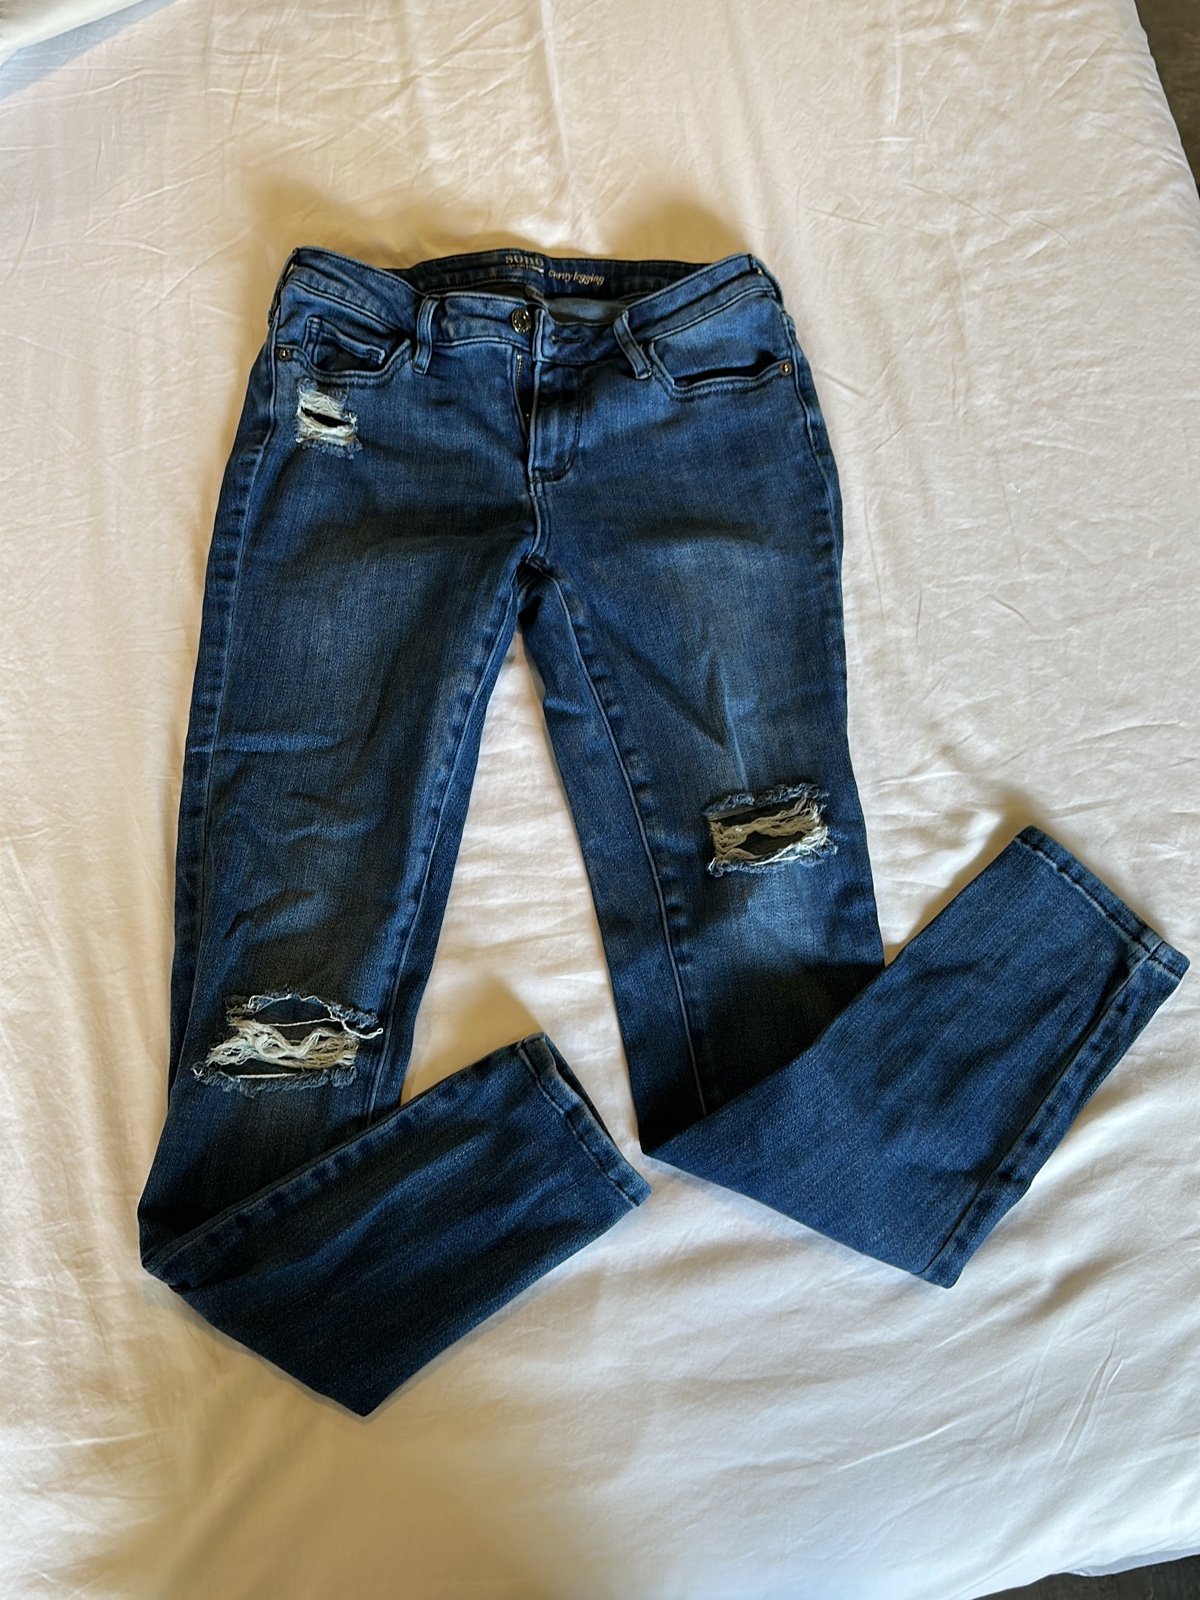 Popular Jeans nfnvGnUD8 on sale